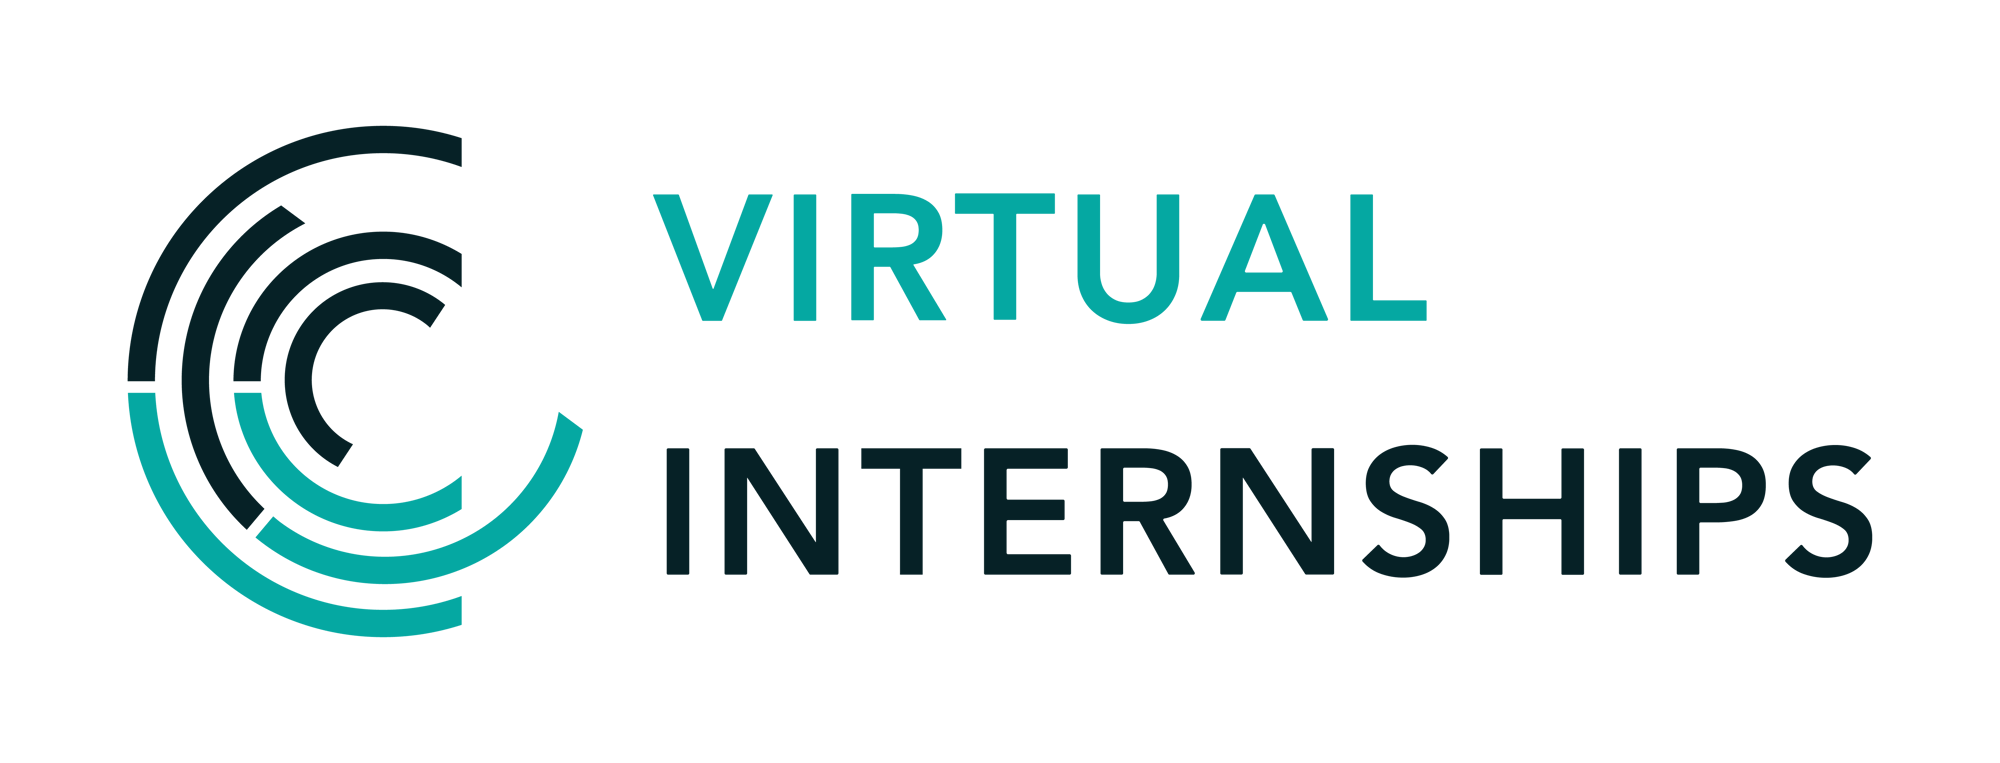 Virtual Internships Logo.PNG